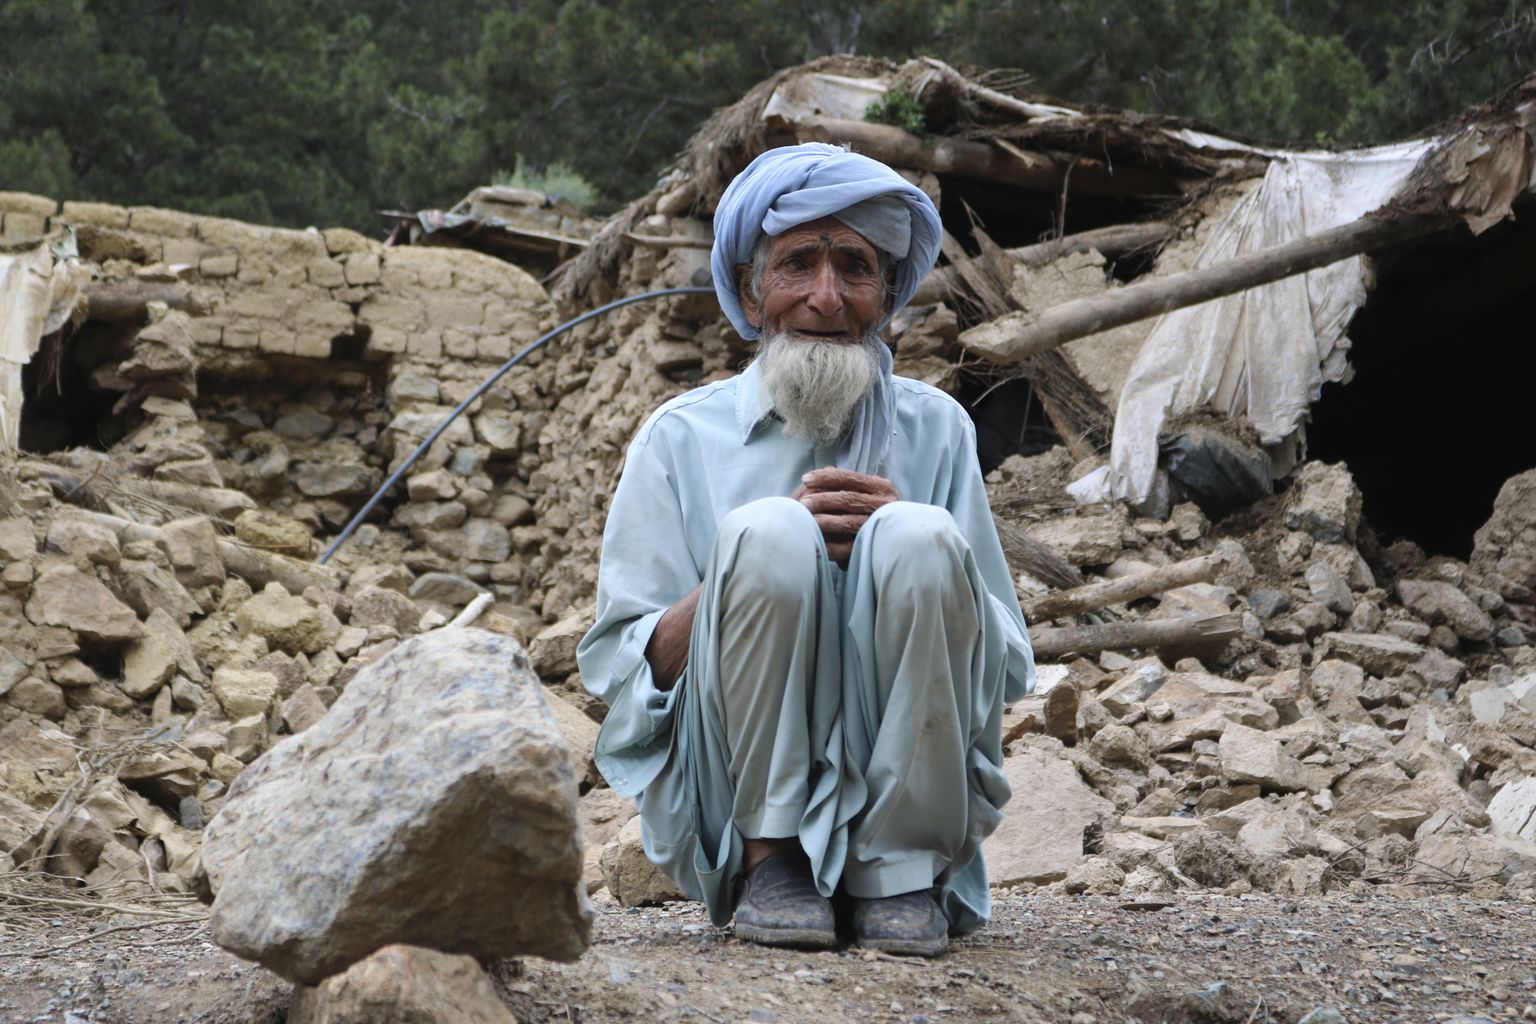 Khosti provintsis asuvast Spera piirkonnast pärit mees oma maavärinas hävinud kodu juures maas istumas.